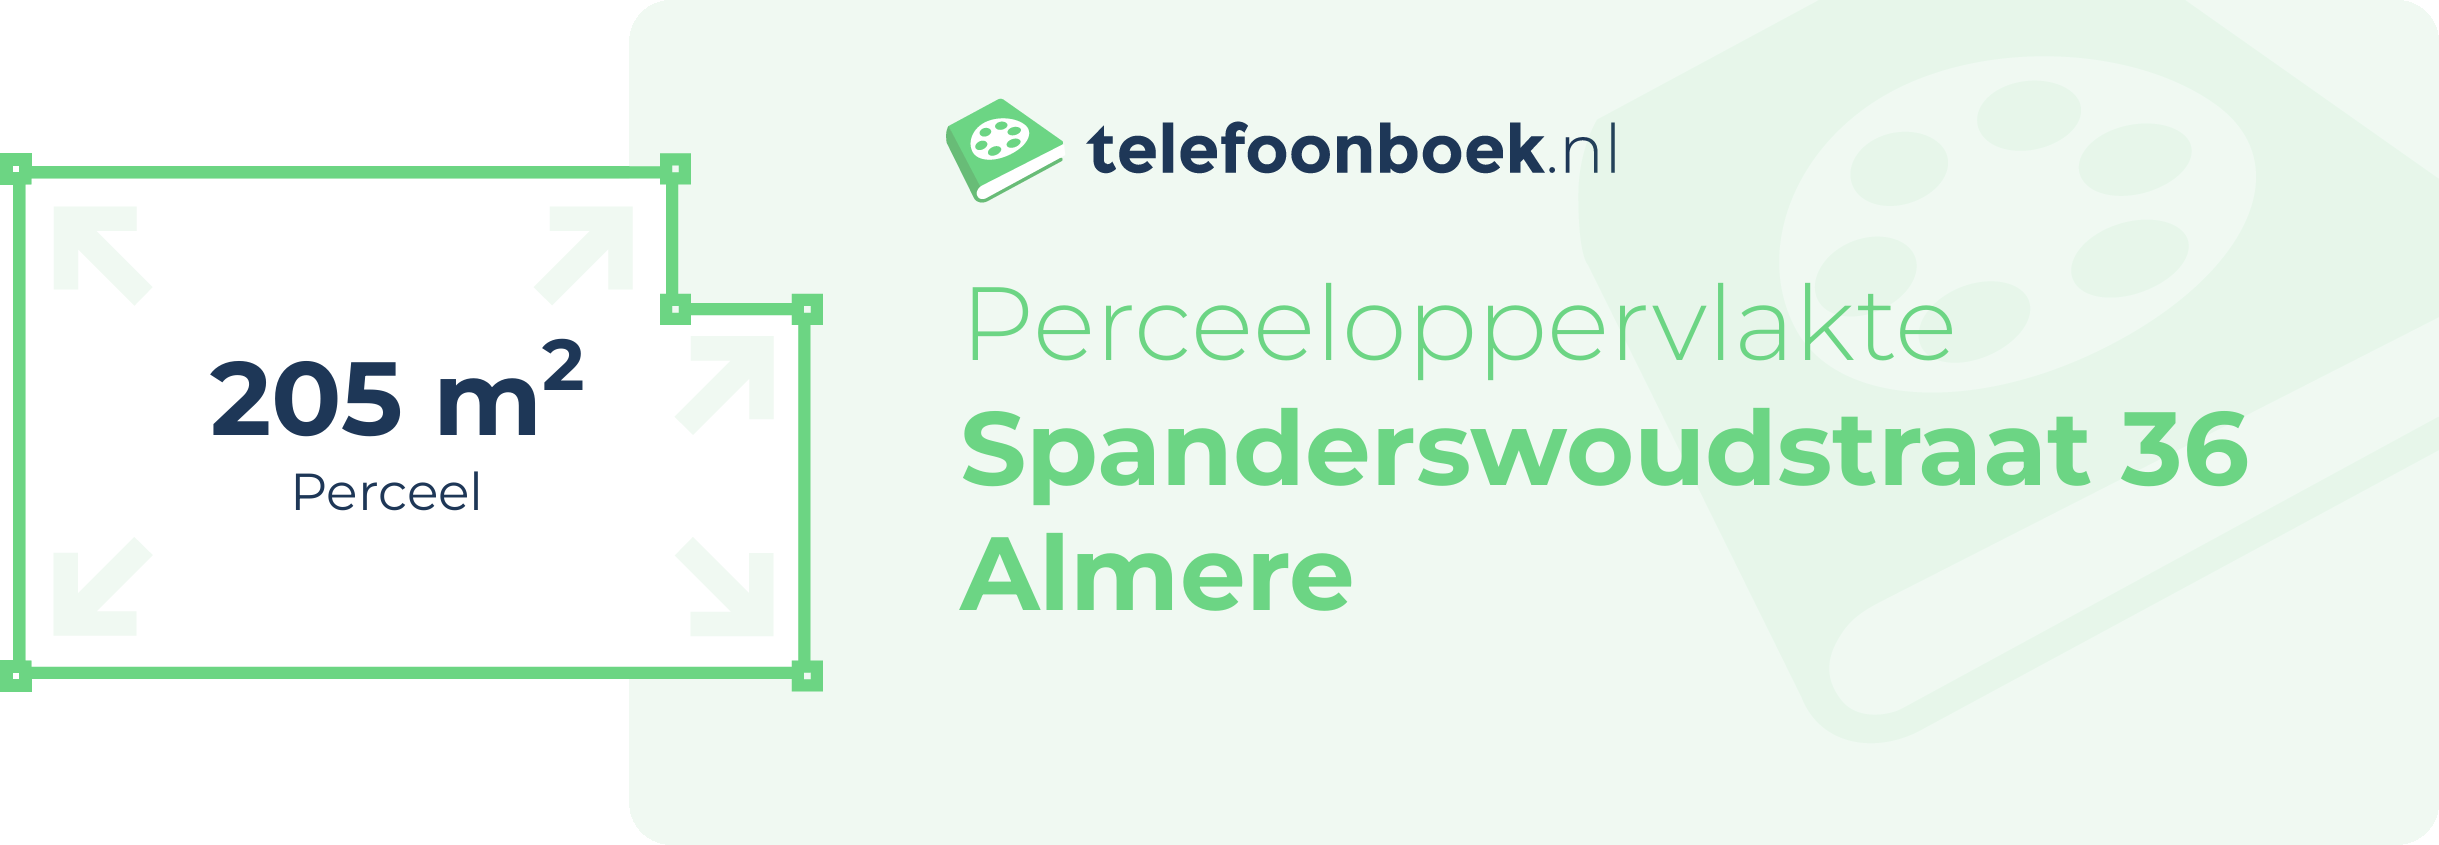 Perceeloppervlakte Spanderswoudstraat 36 Almere